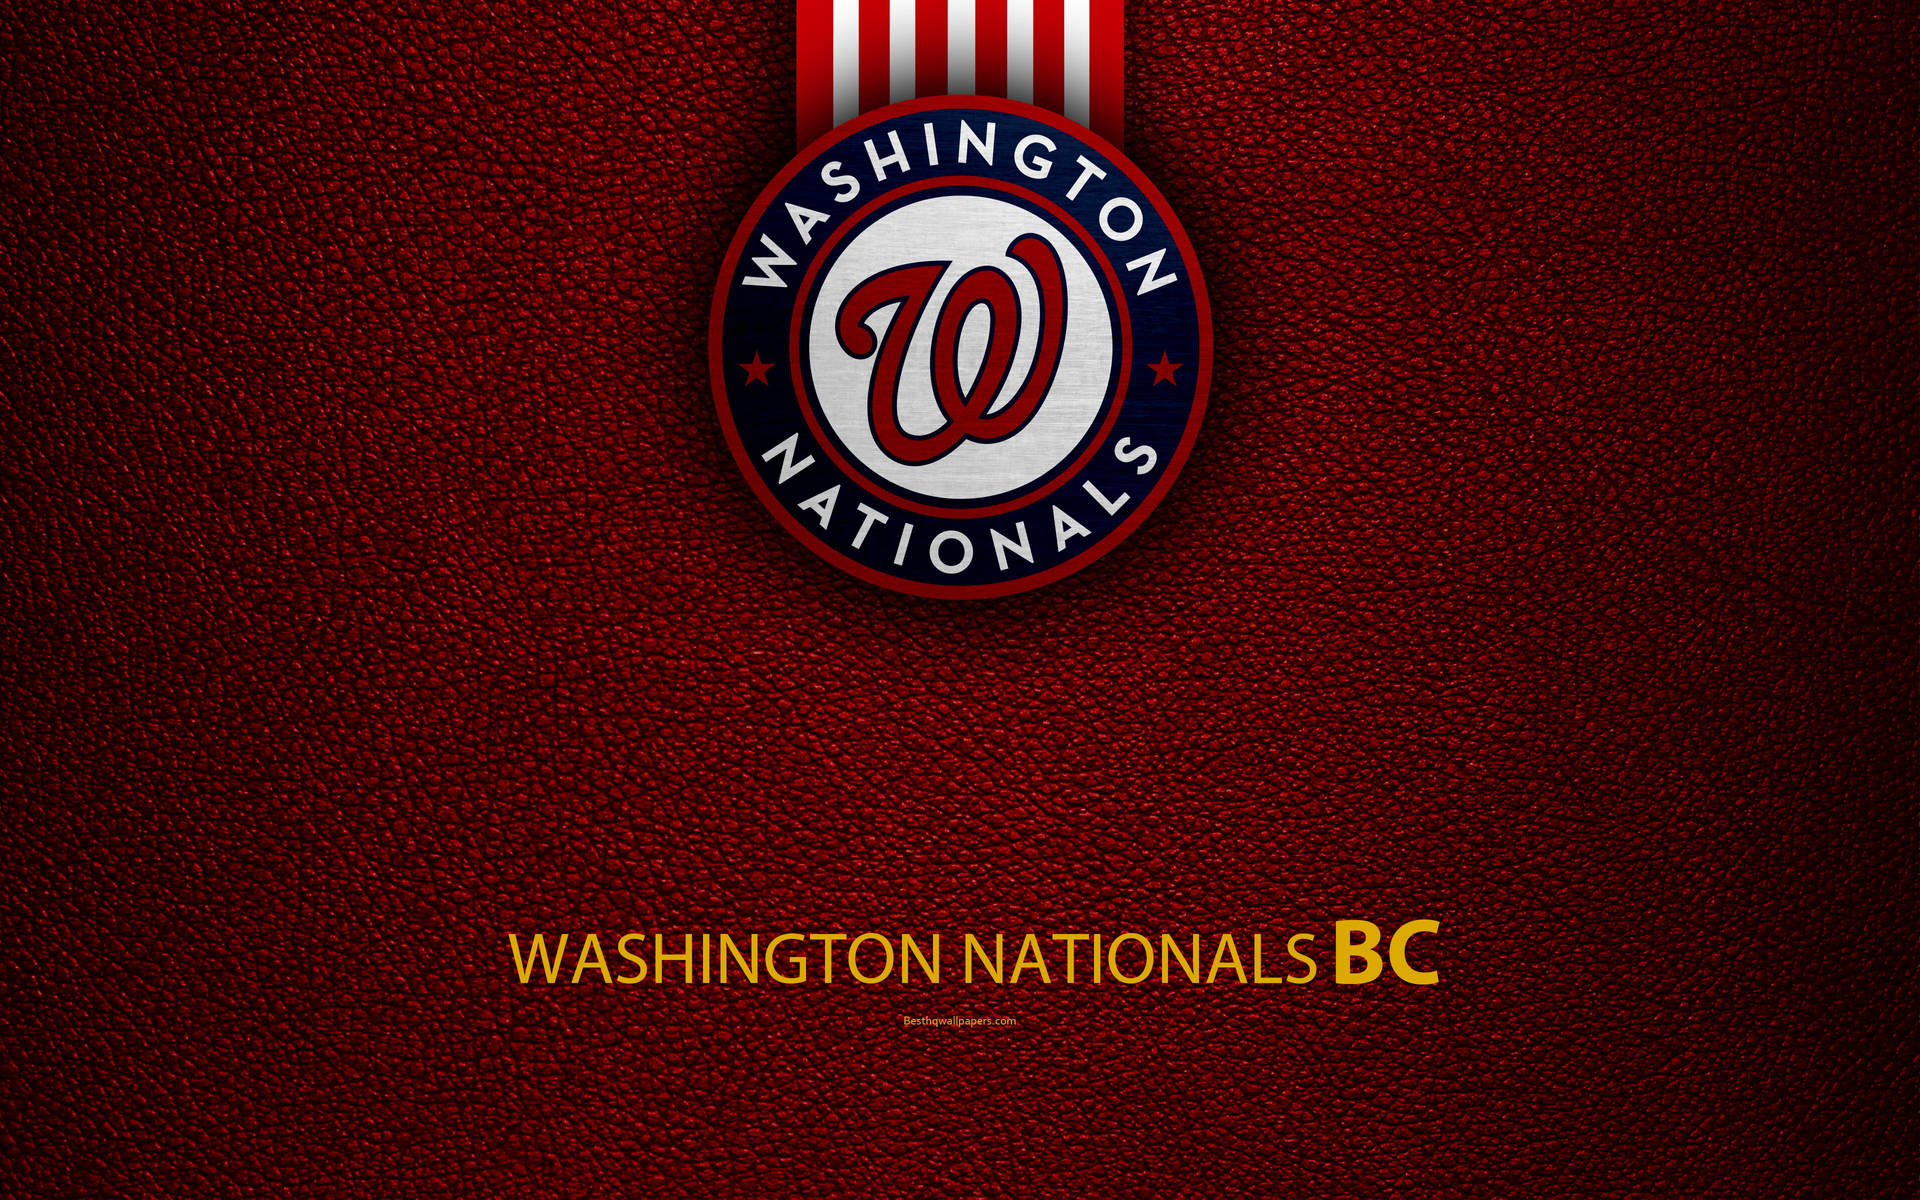 Washington Nationals Maroon Background